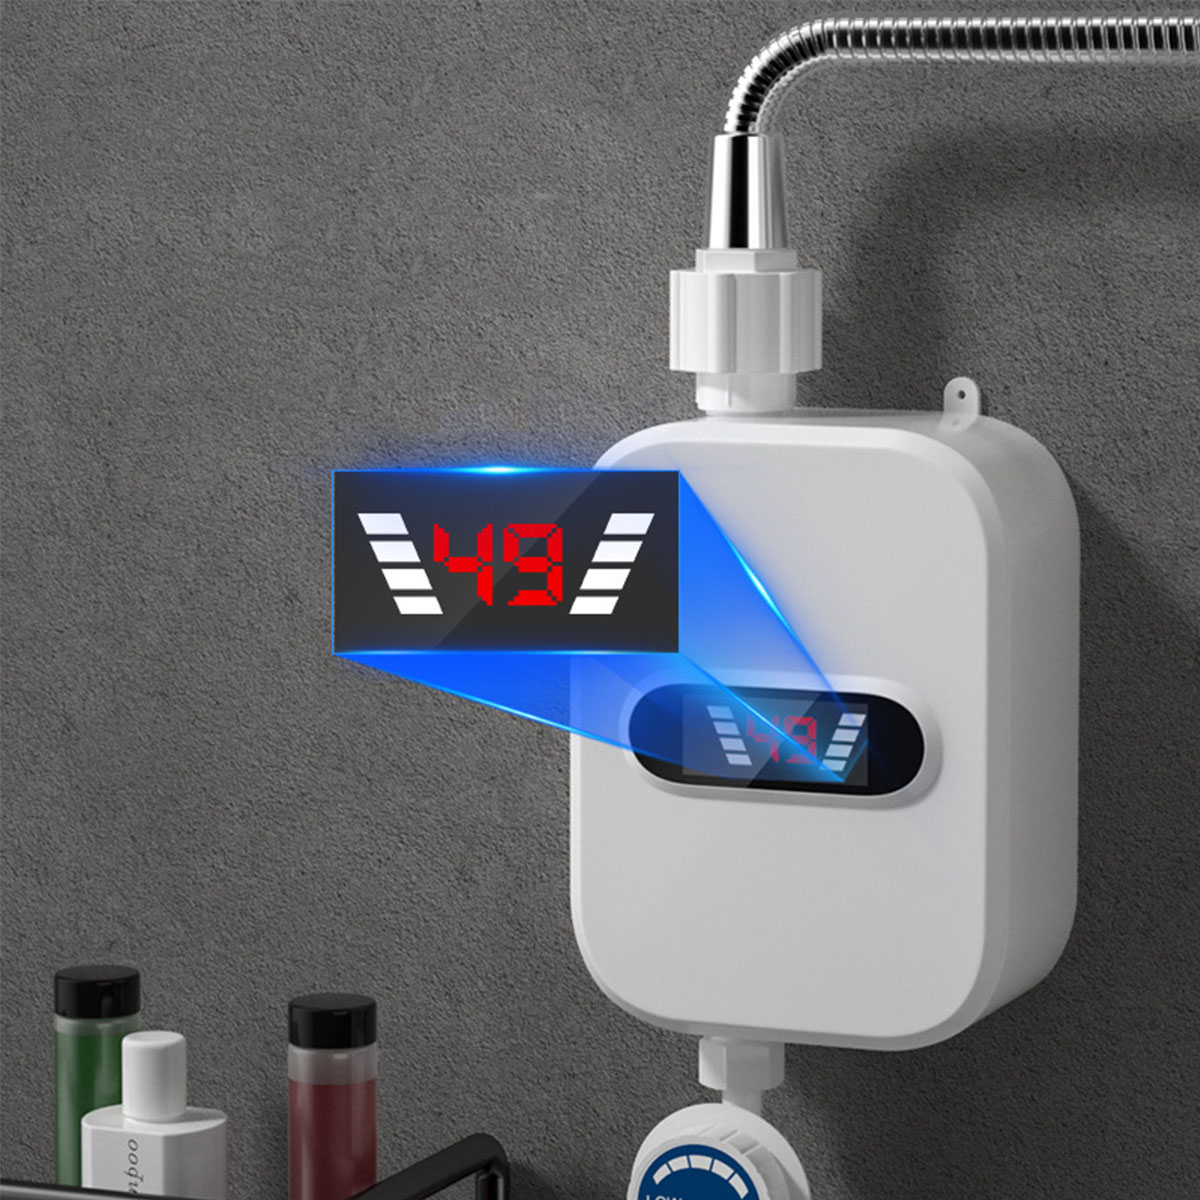 Kompakte BRIGHTAKE Warmwasserbereiter Brausegarnitur Thermostat-Durchlauferhitzer-Duschkopf-Set Sofortiges - Warmwasser